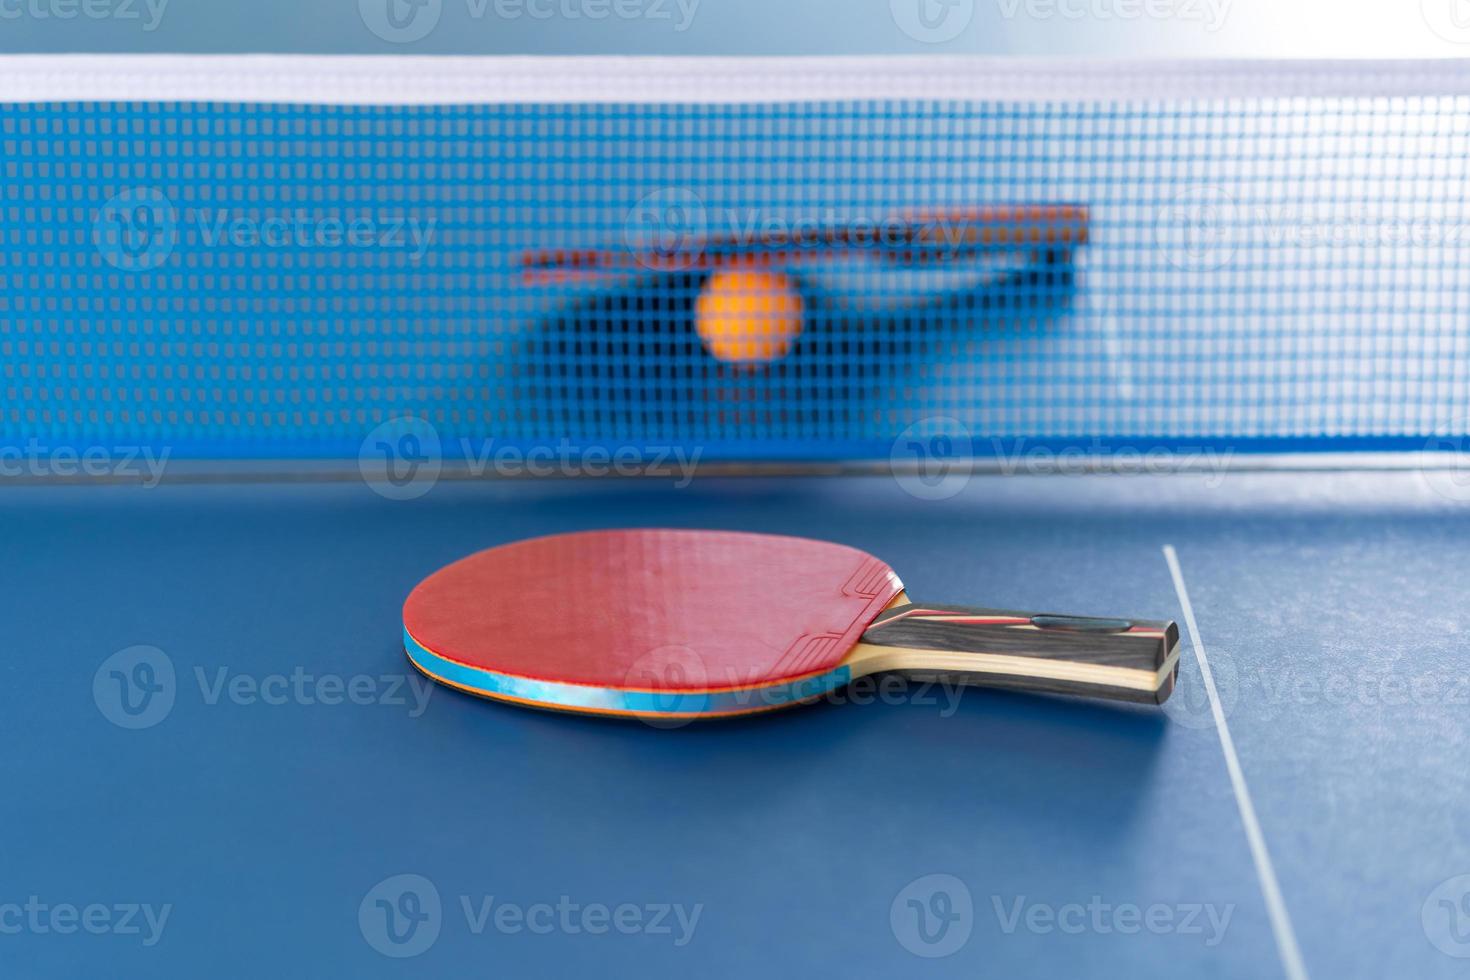 raquete de tênis de mesa e bola foto